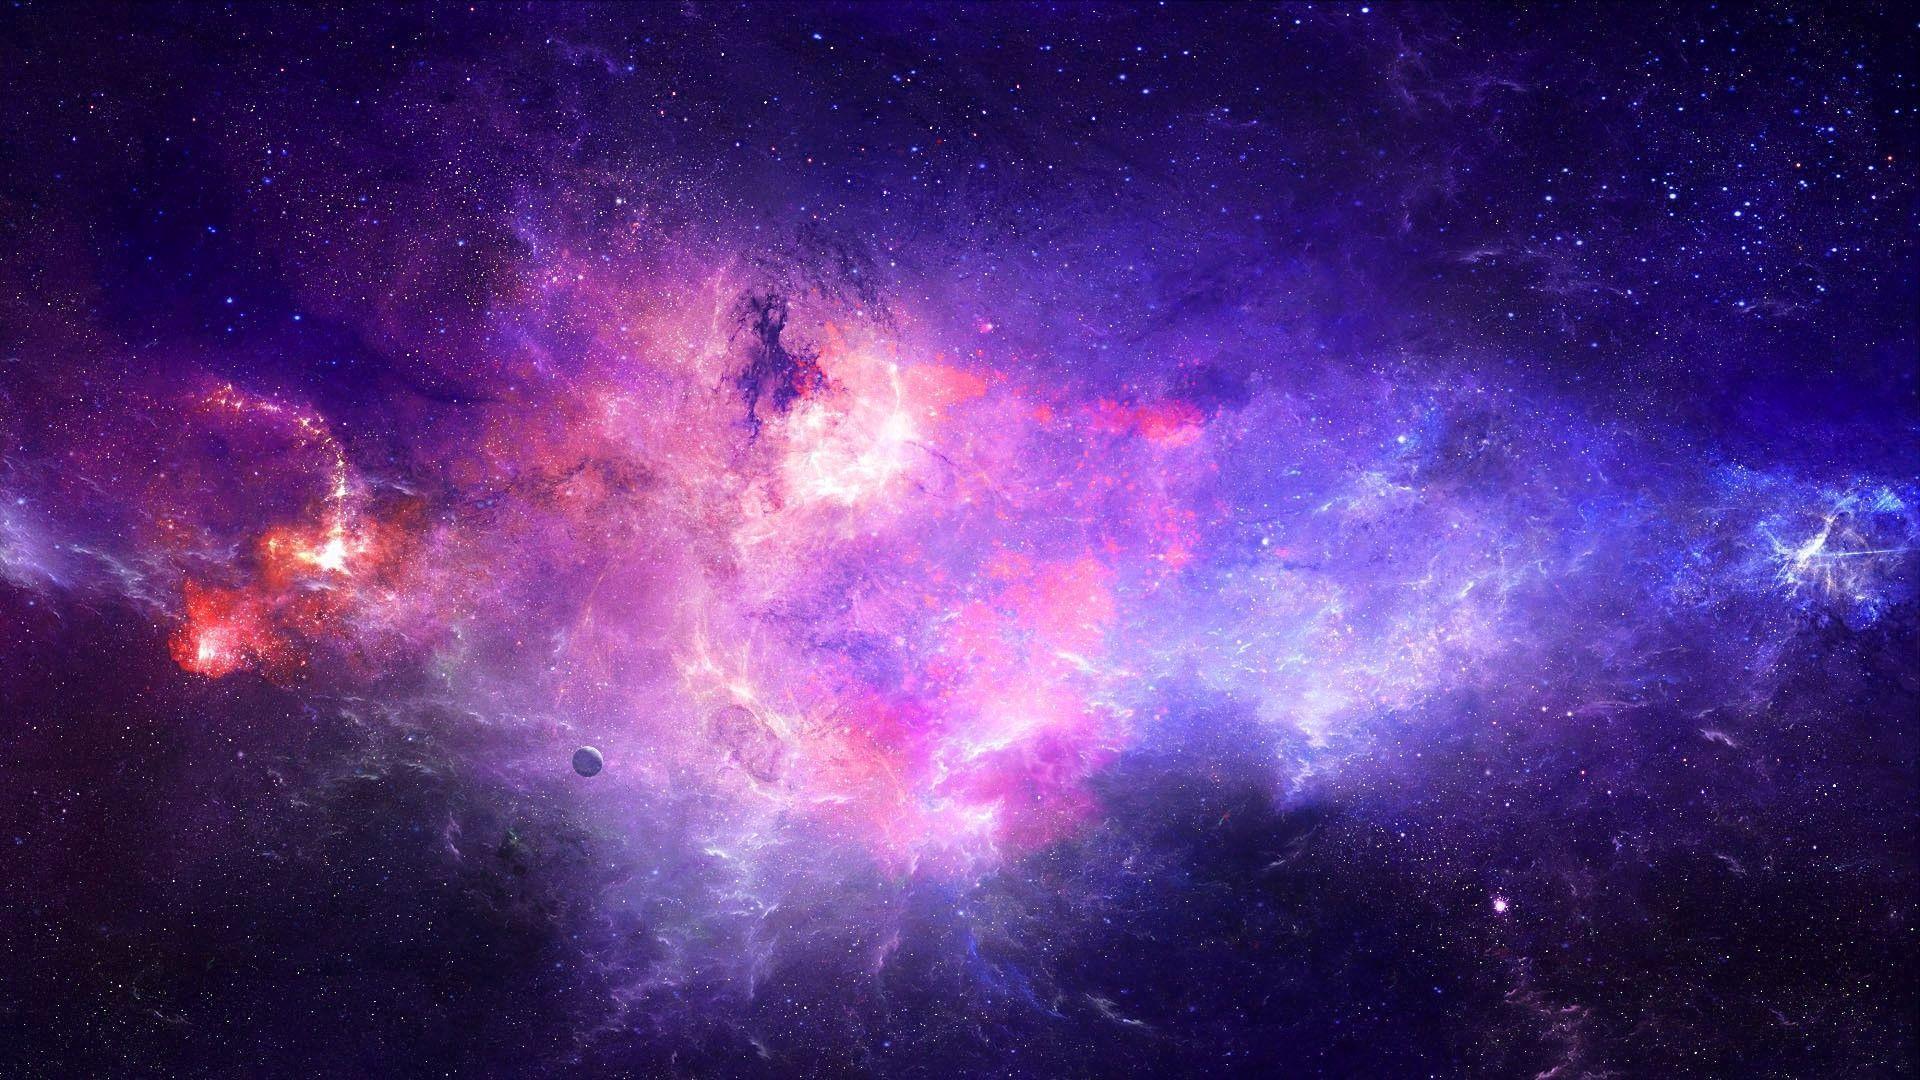 Thiên hà là một trong những khái niệm vĩ đại và huyền bí nhất trong vũ trụ của chúng ta. Nó bao gồm hàng triệu sao, hành tinh, khối khí và vật chất khác, và tạo ra một cảnh tượng mê hoặc không thể tả bằng lời. Nếu bạn muốn khám phá vẻ đẹp đầy kỳ diệu của thiên hà, hãy truy cập trang web của chúng tôi để tải xuống những hình ảnh thiên hà đầy mê hoặc!